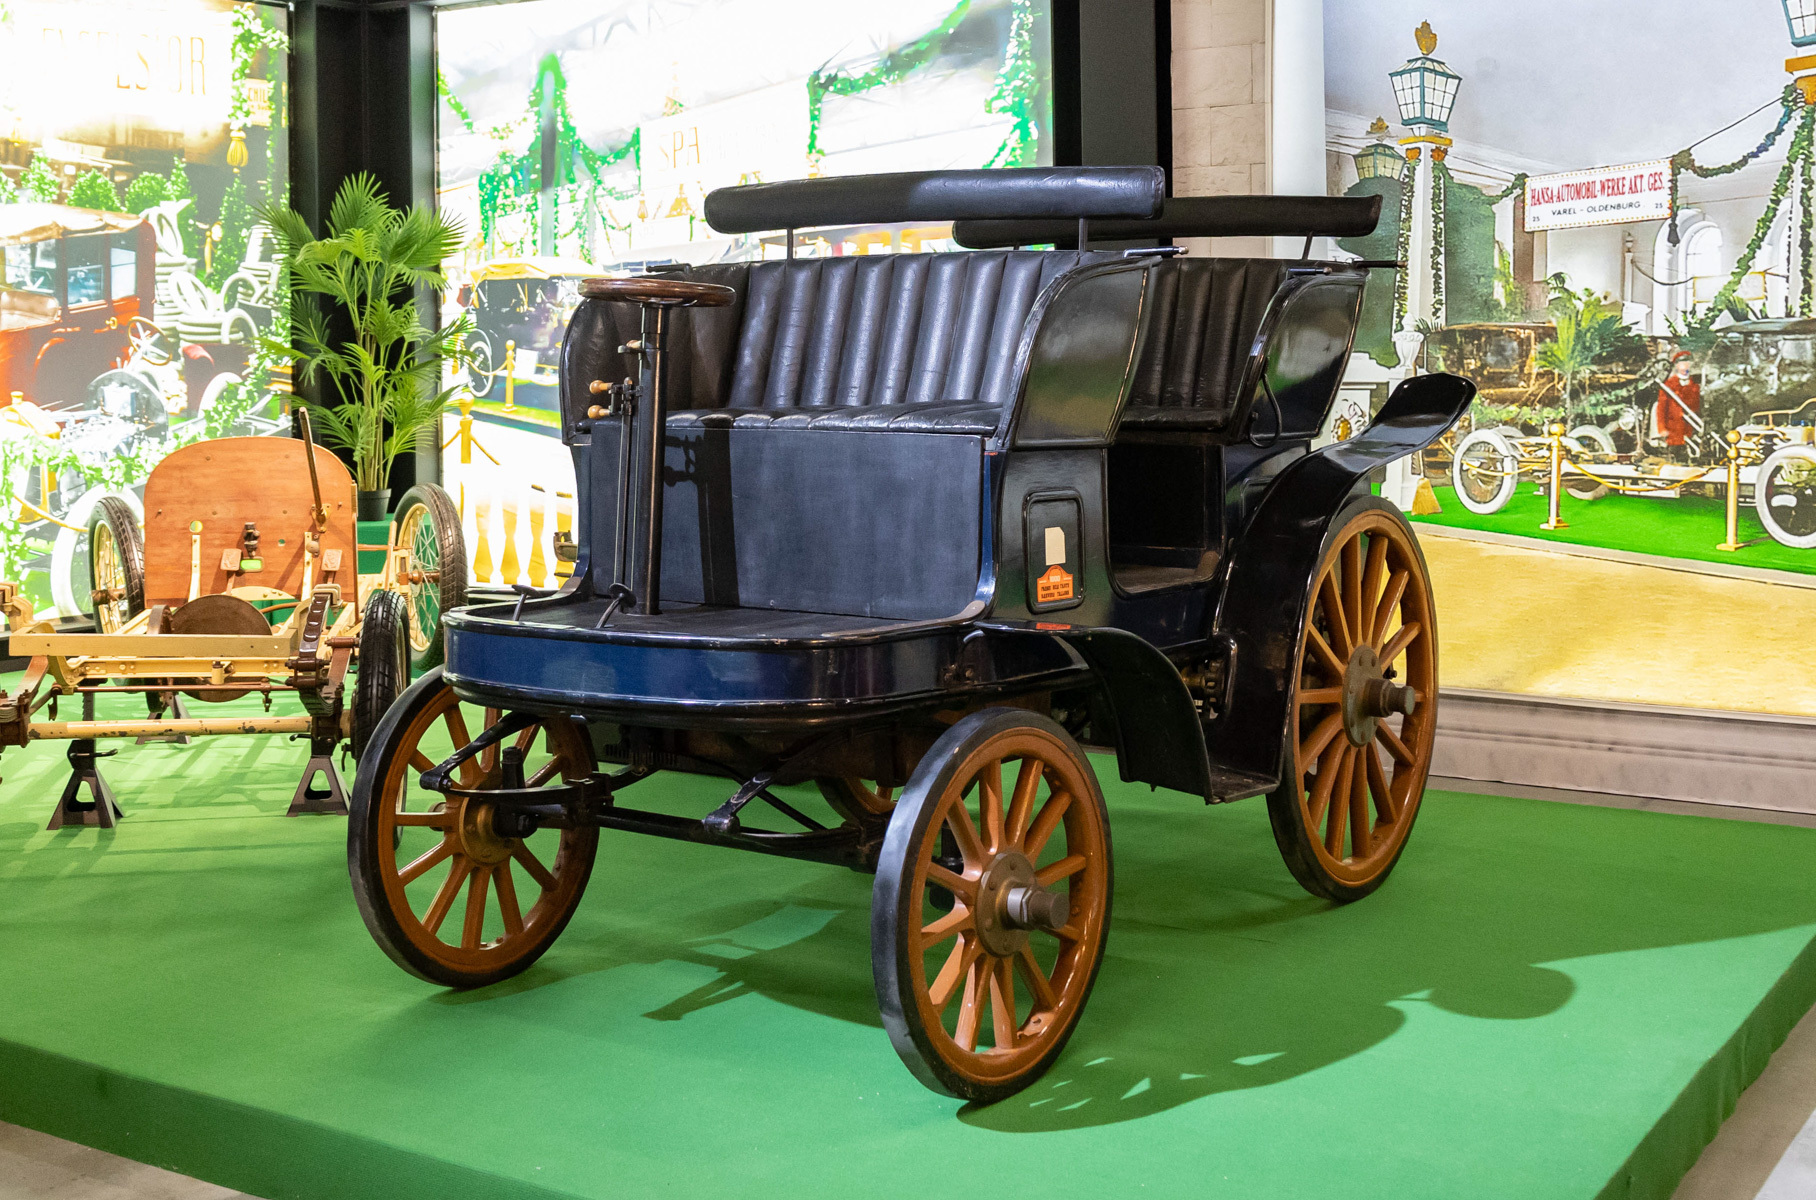 Немецкий автомобиль Großer Stoewer Motorwagen был выпущен лишь в одном экземпляре в 1899 год. И он на ходу.